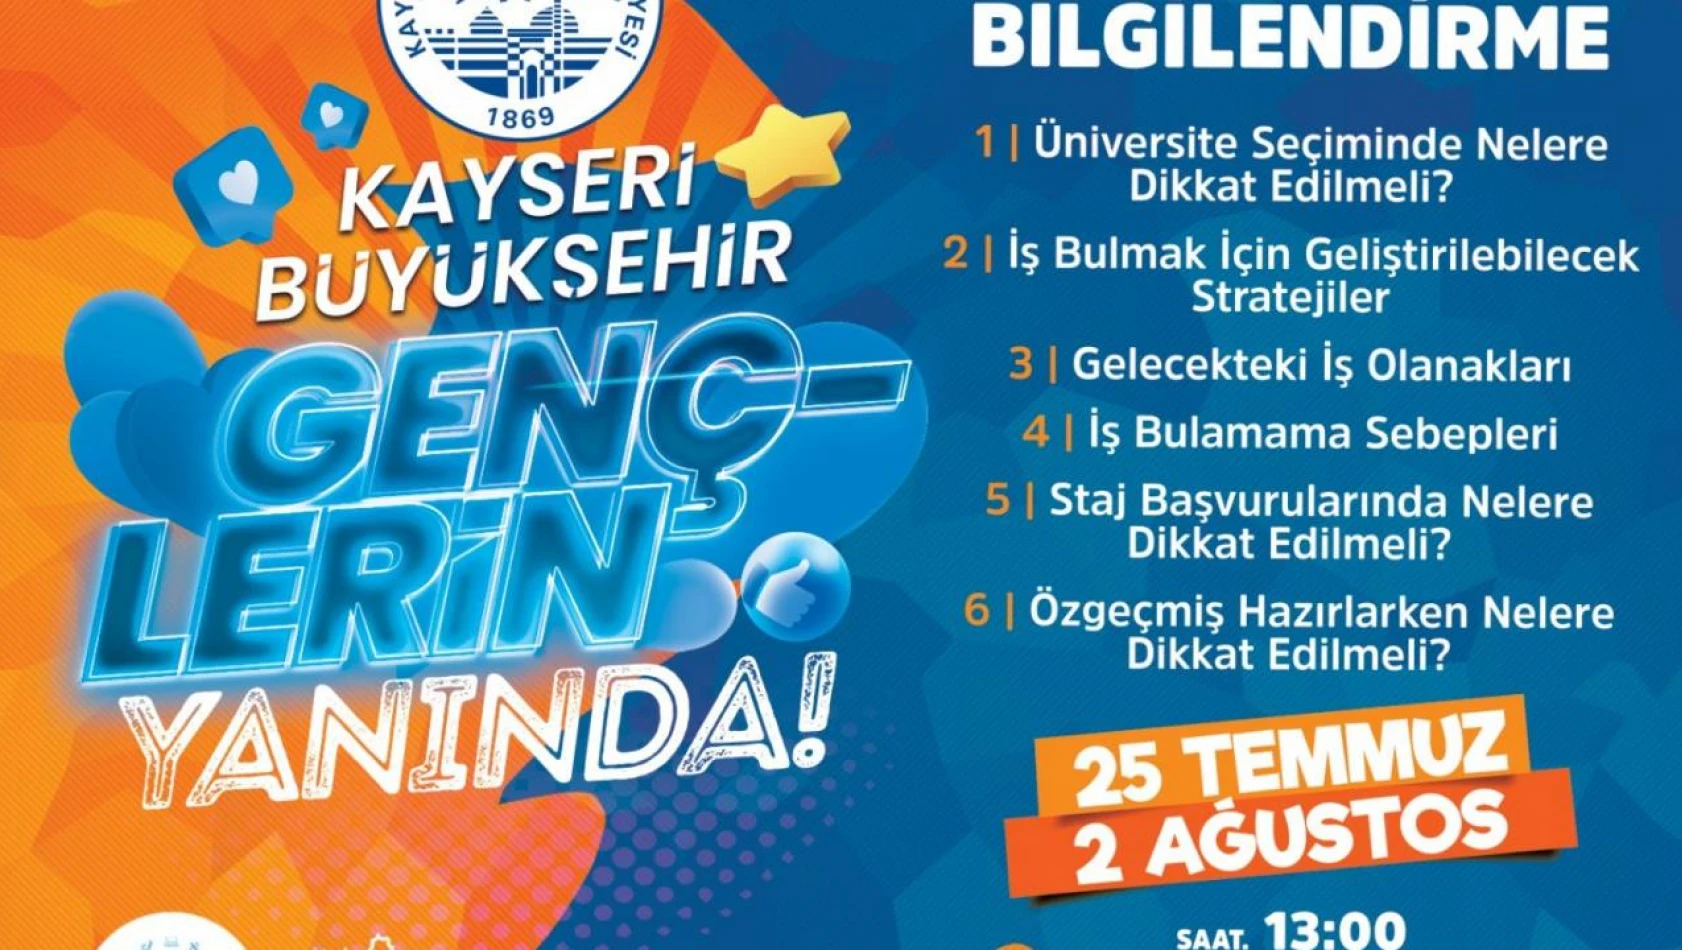 Kayseri'de gençlere özel konferans